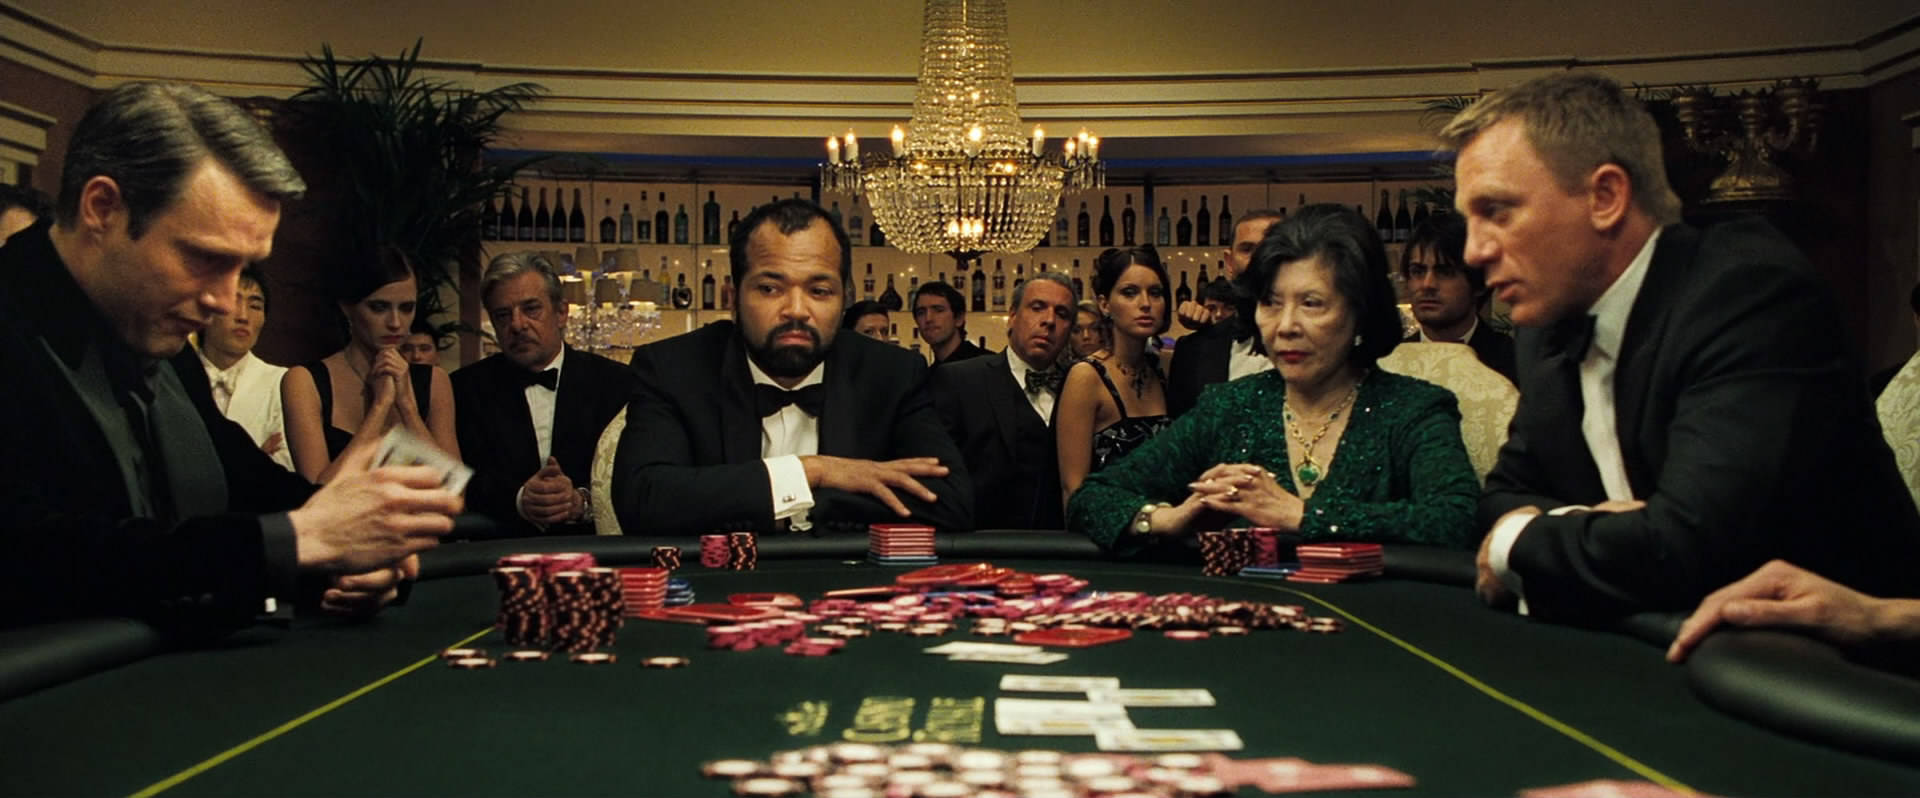 Rika Människor Spelar På Pokerbordet Wallpaper